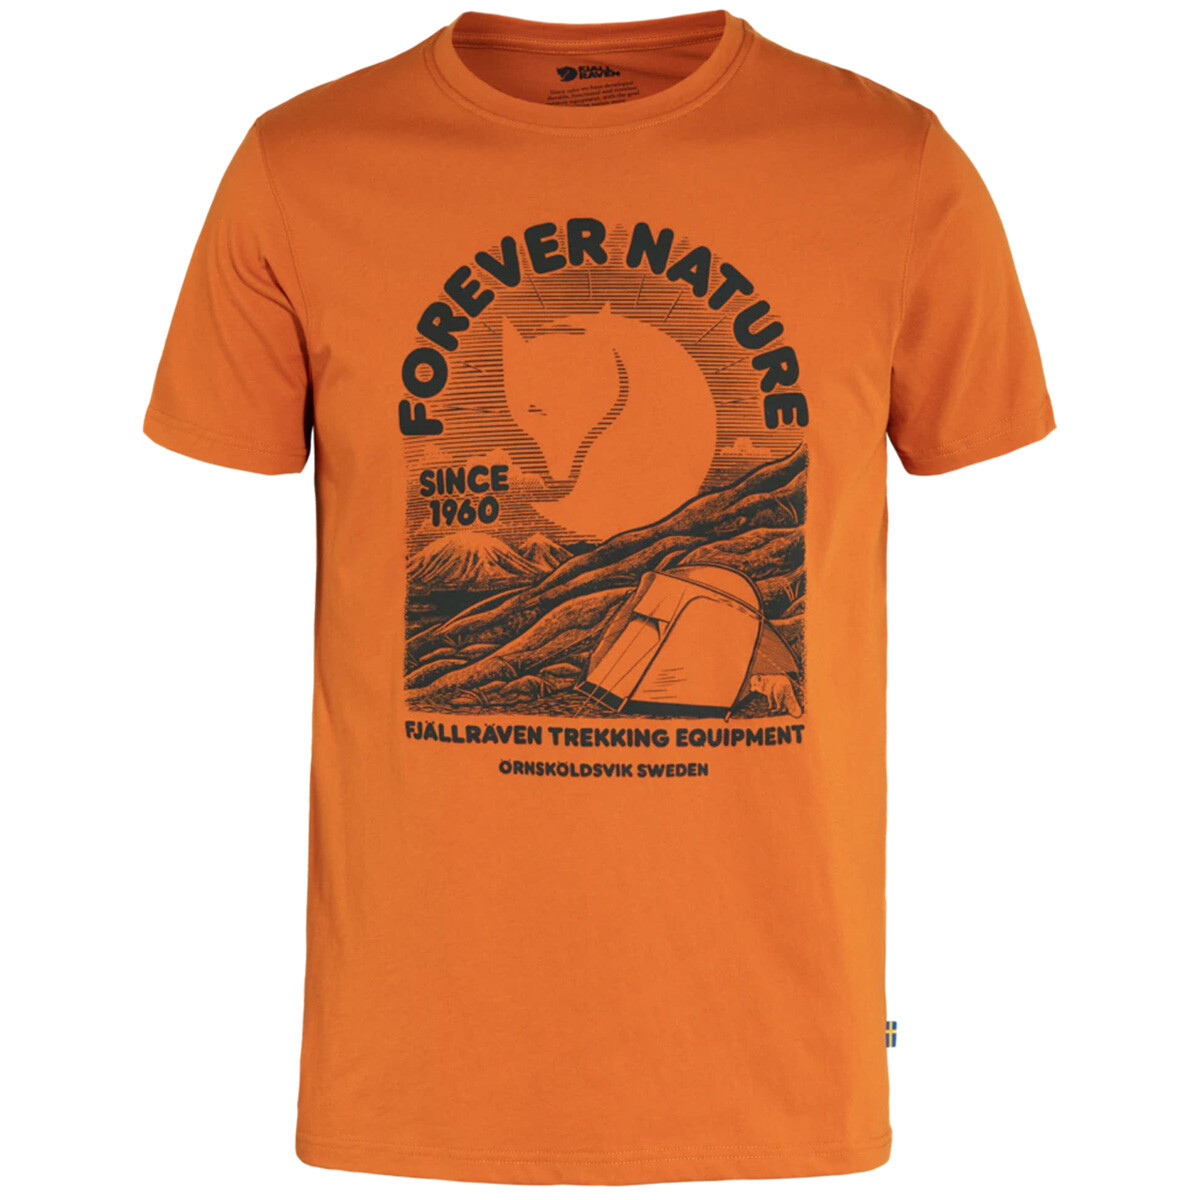 Billede af Fjällräven Equipment T-shirt (Sunset Orange, M) hos Specialbutikken